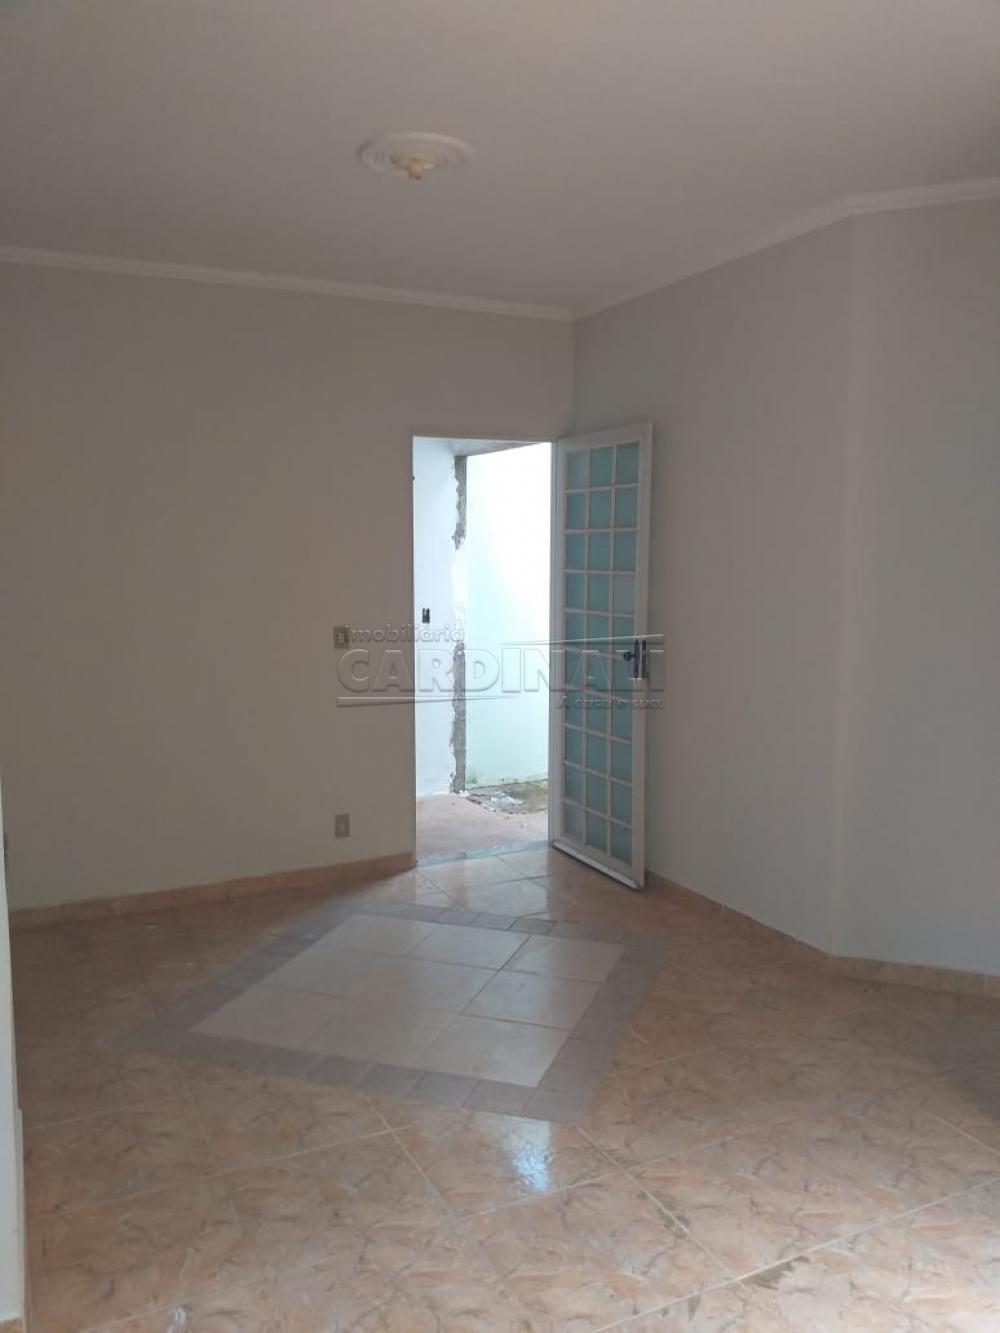 Alugar Casa / Padrão em São Carlos R$ 1.000,00 - Foto 6